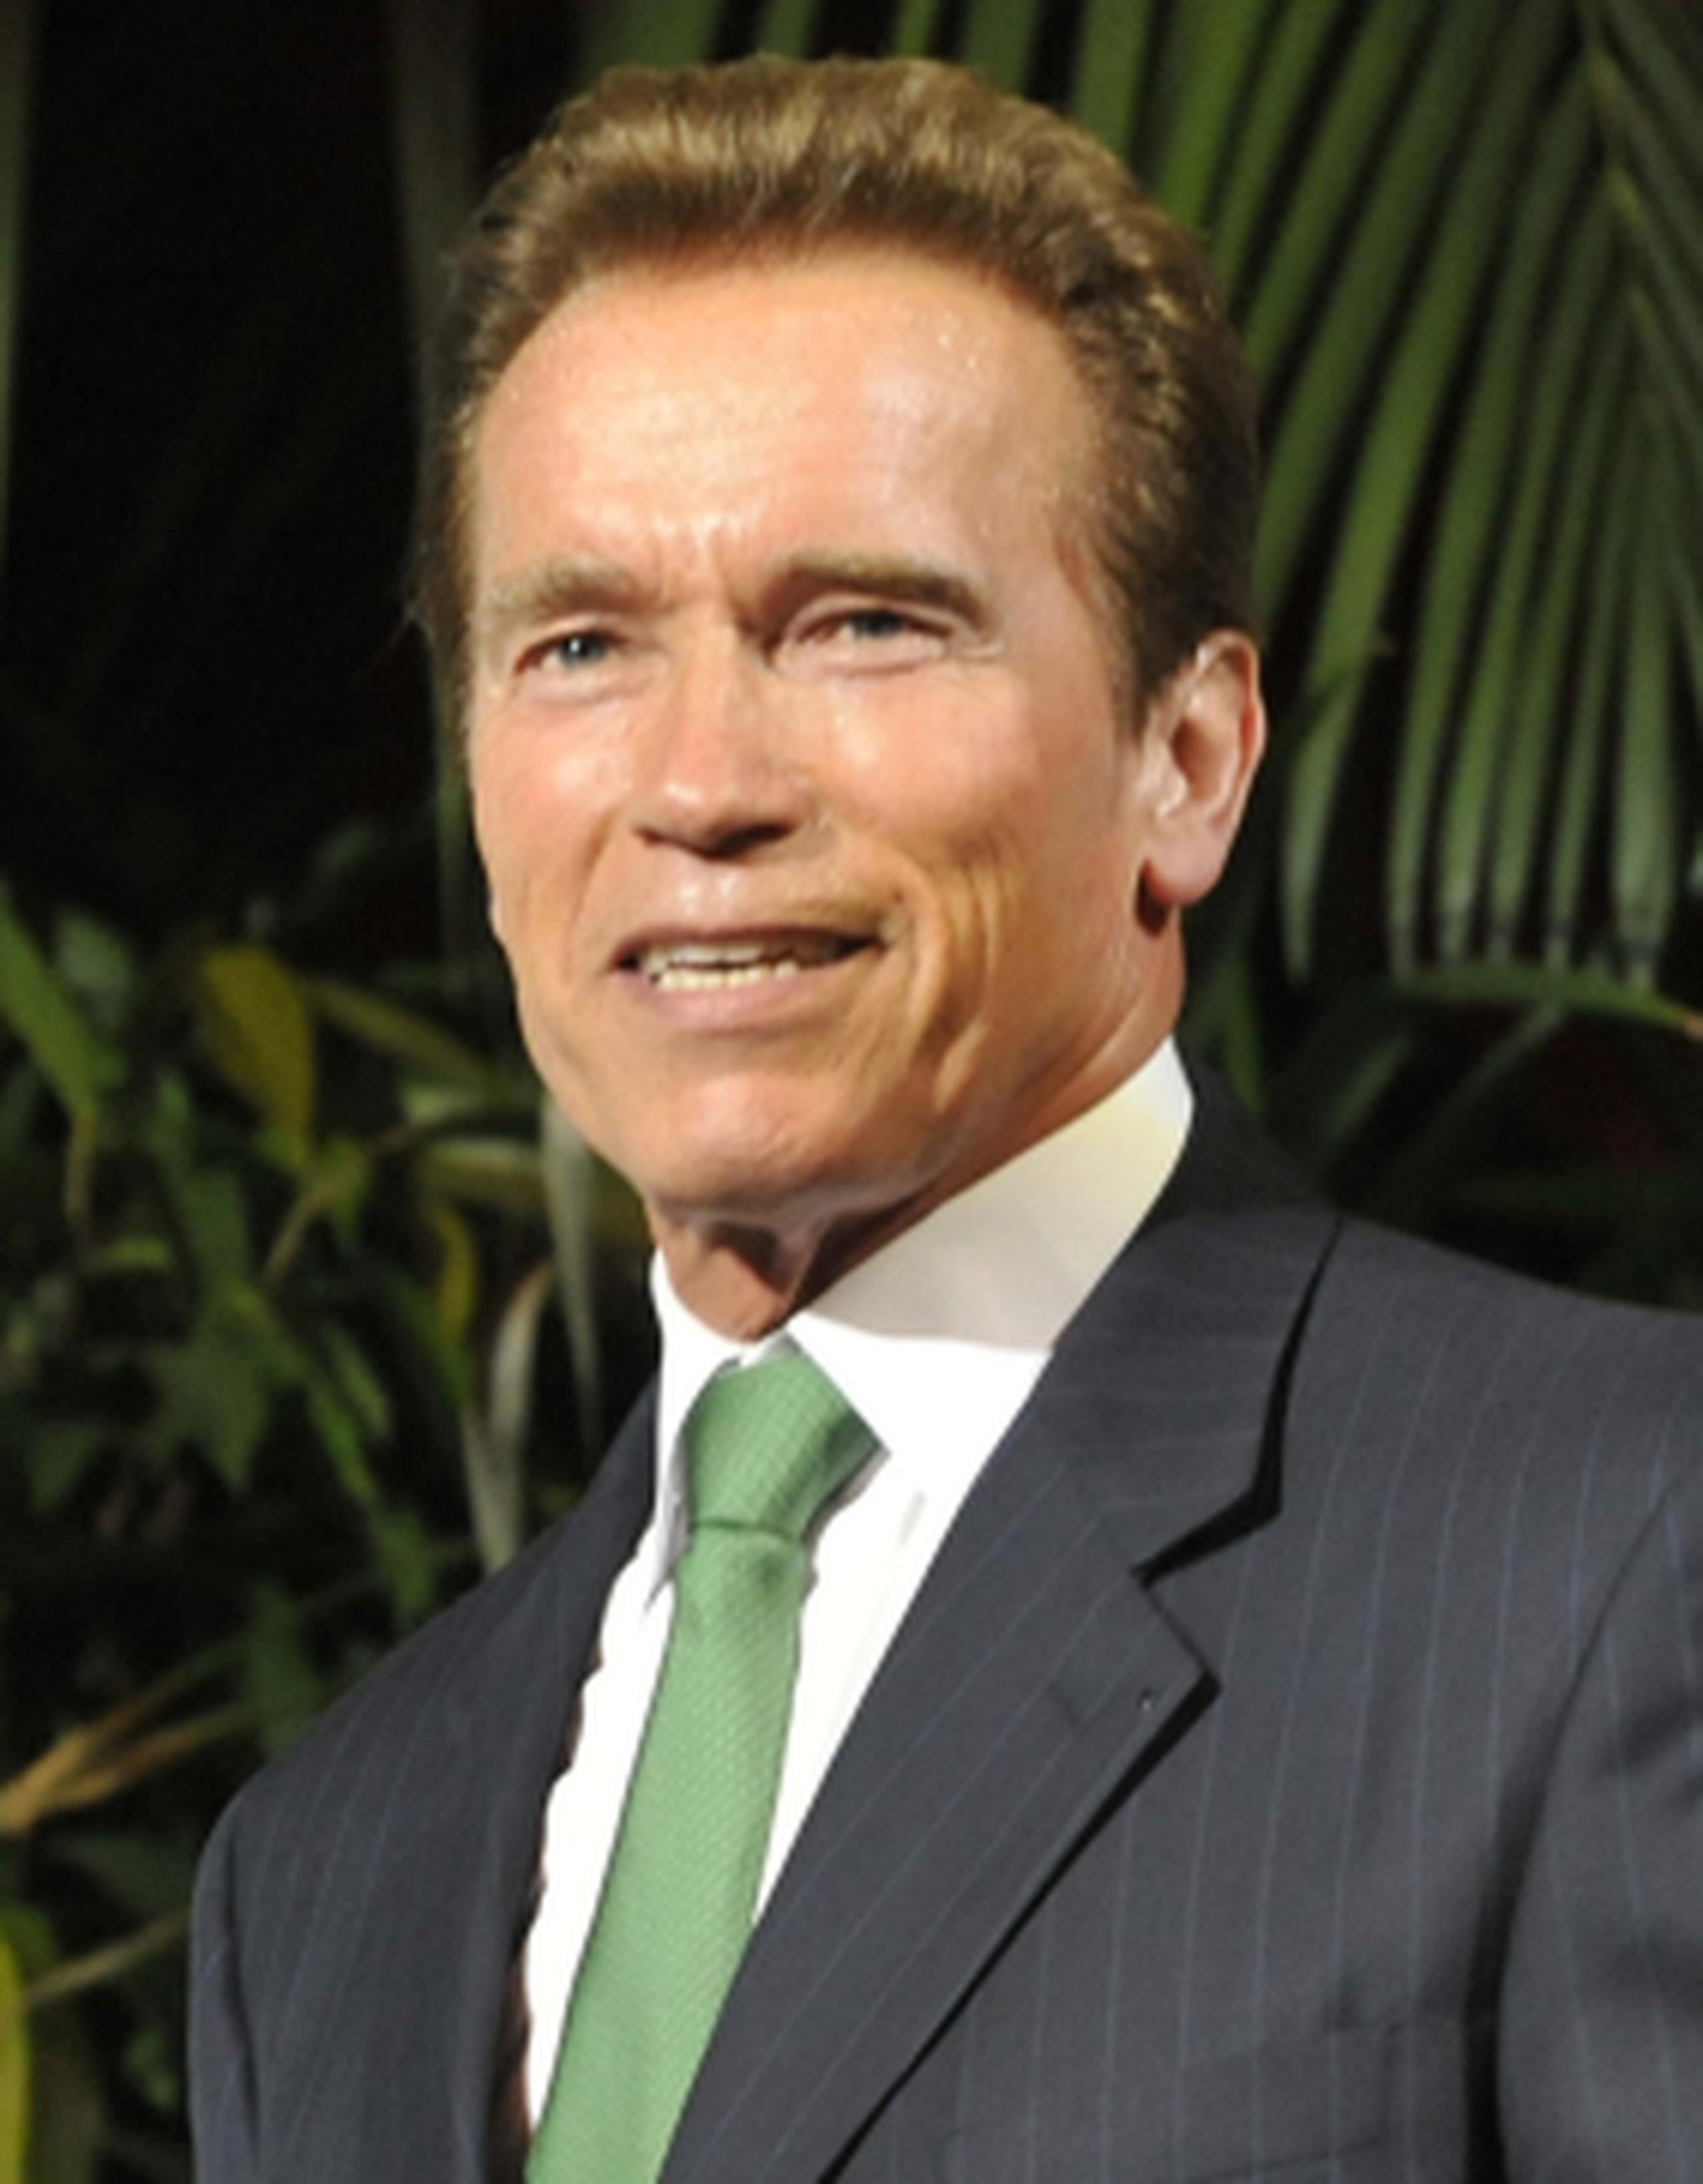 El Times dijo que Schwarzenegger, quien ha aparecido en las portadas de ambas revistas en más de 60 ocasiones, contribuirá con columnas y otros contenidos. (Archivo)